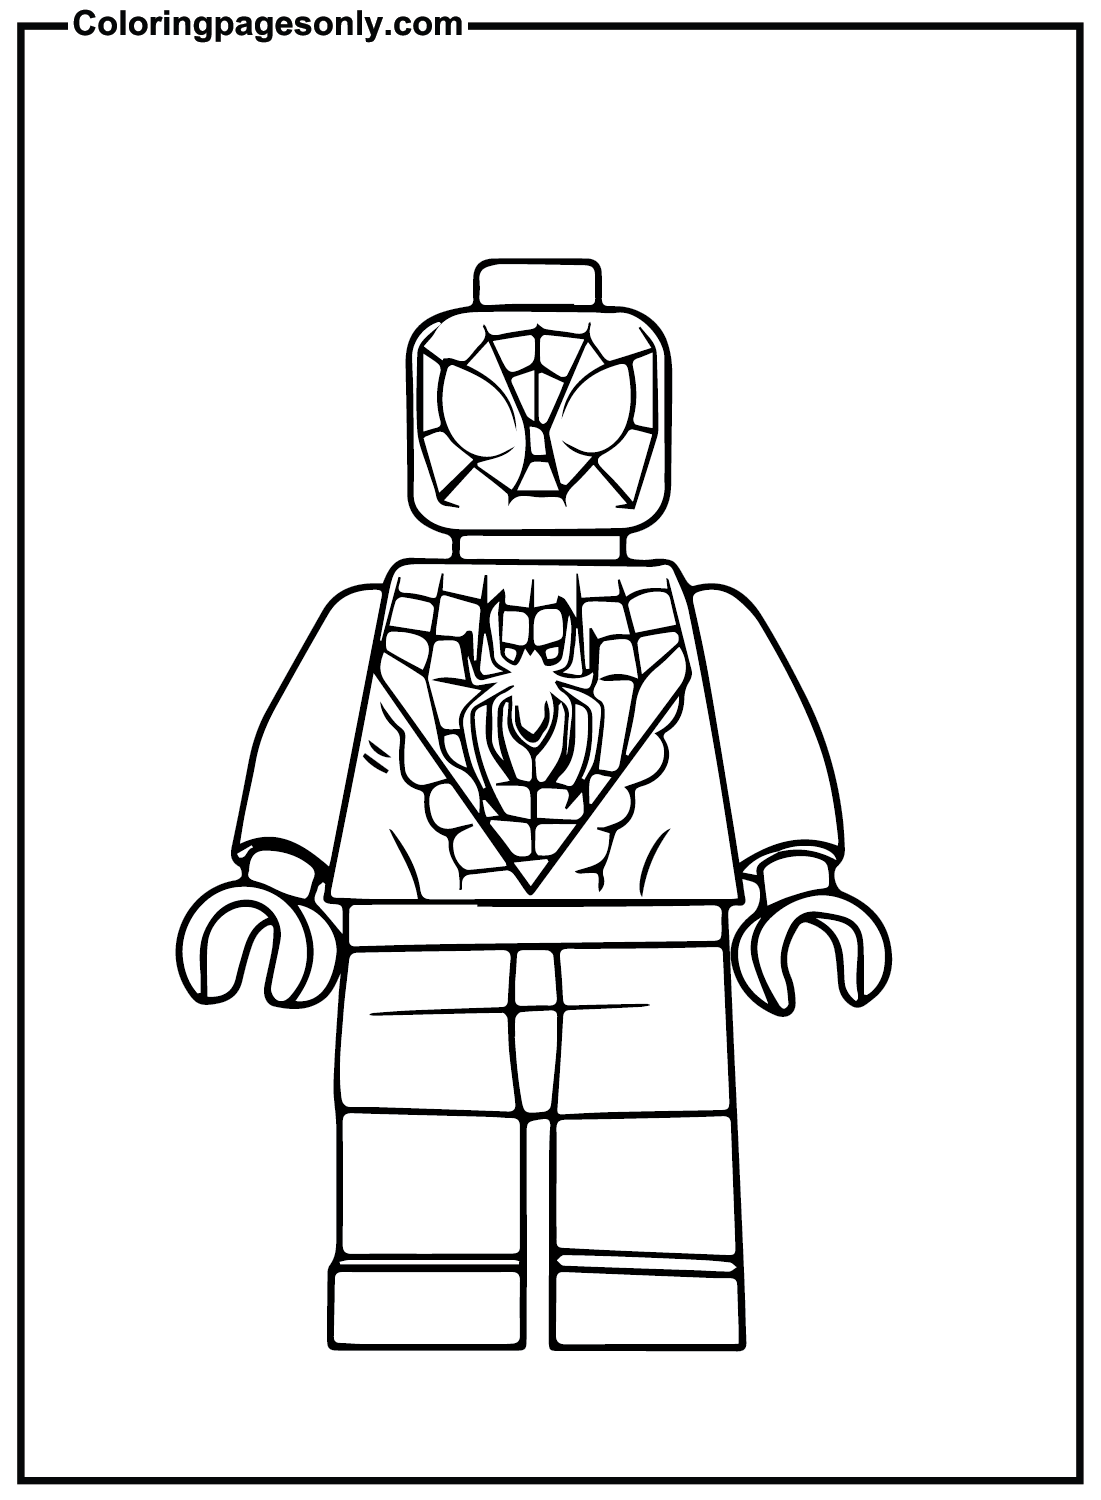 Распечатка LEGO Spiderman из Lego Spiderman